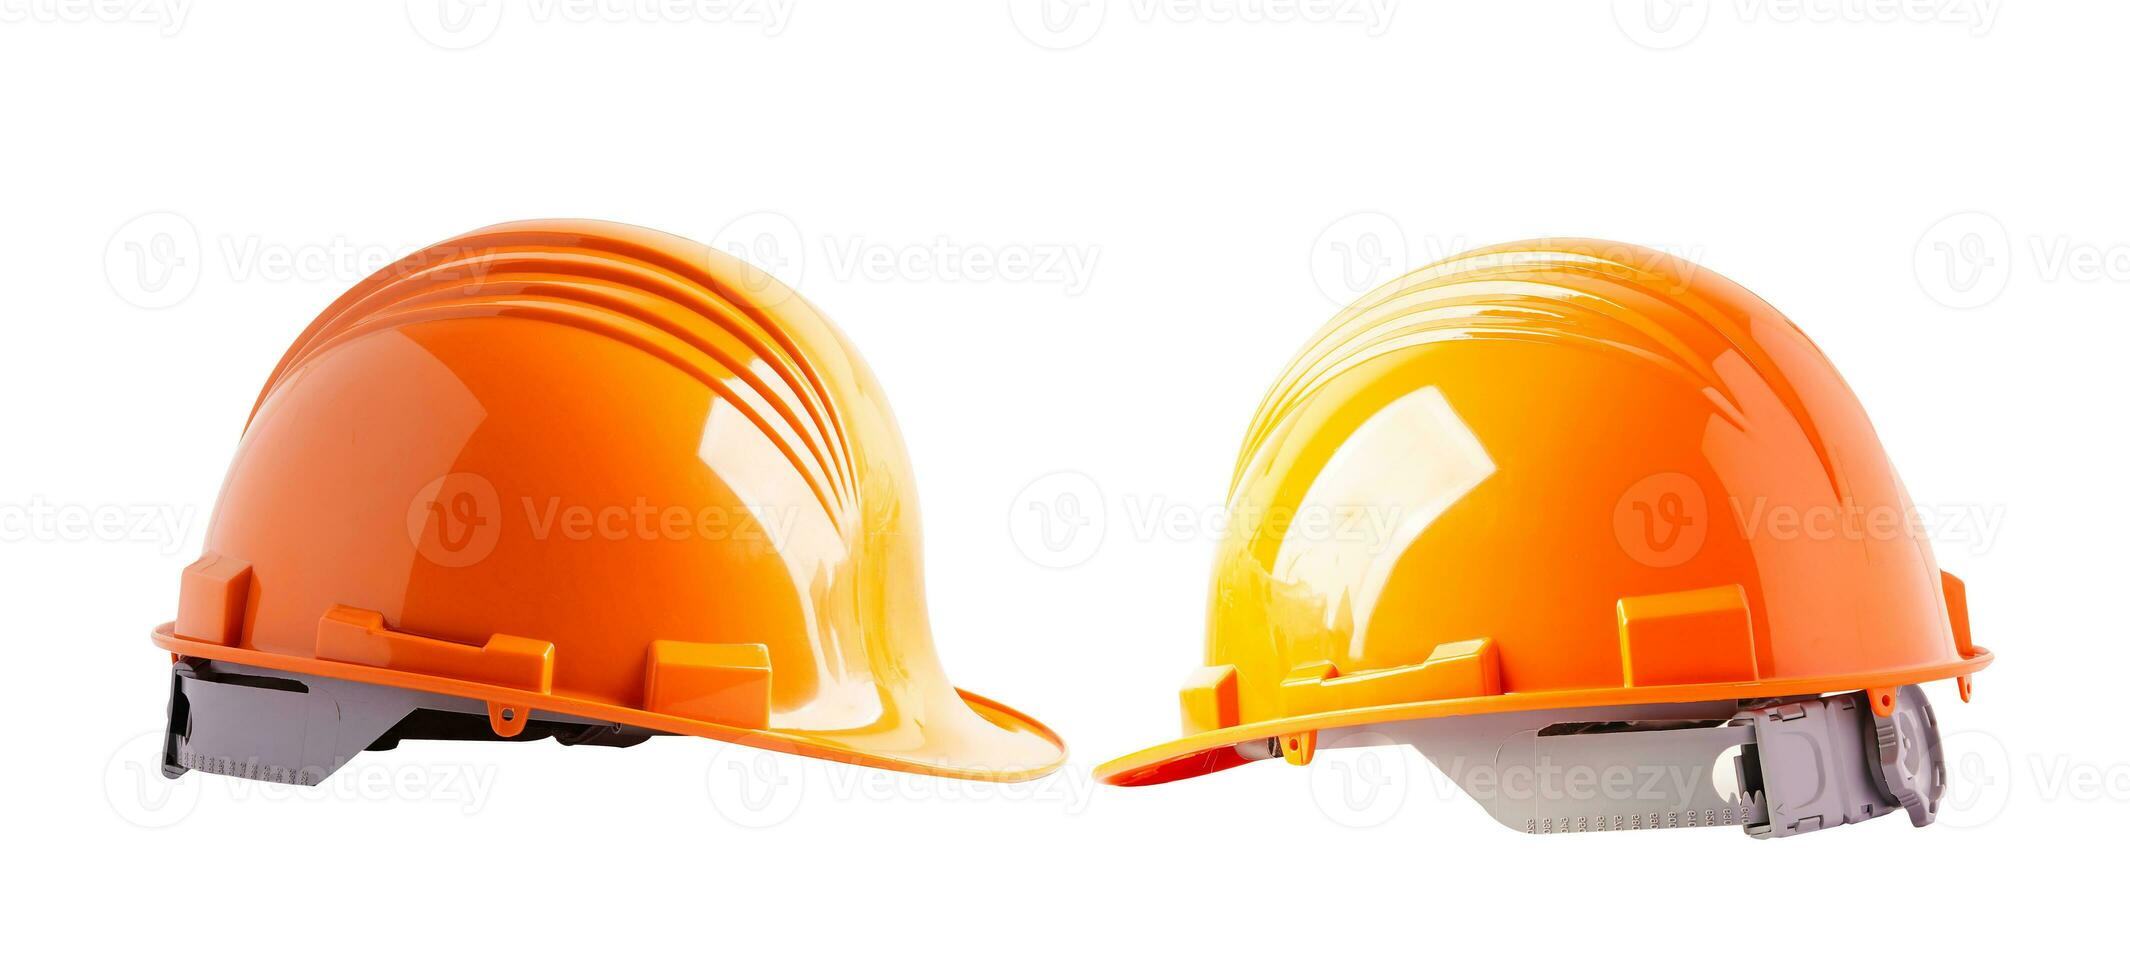 orange och orange hjälm isolerat på vit bakgrund skydda till säkerhet för ingenjör i konstruktion webbplats. foto